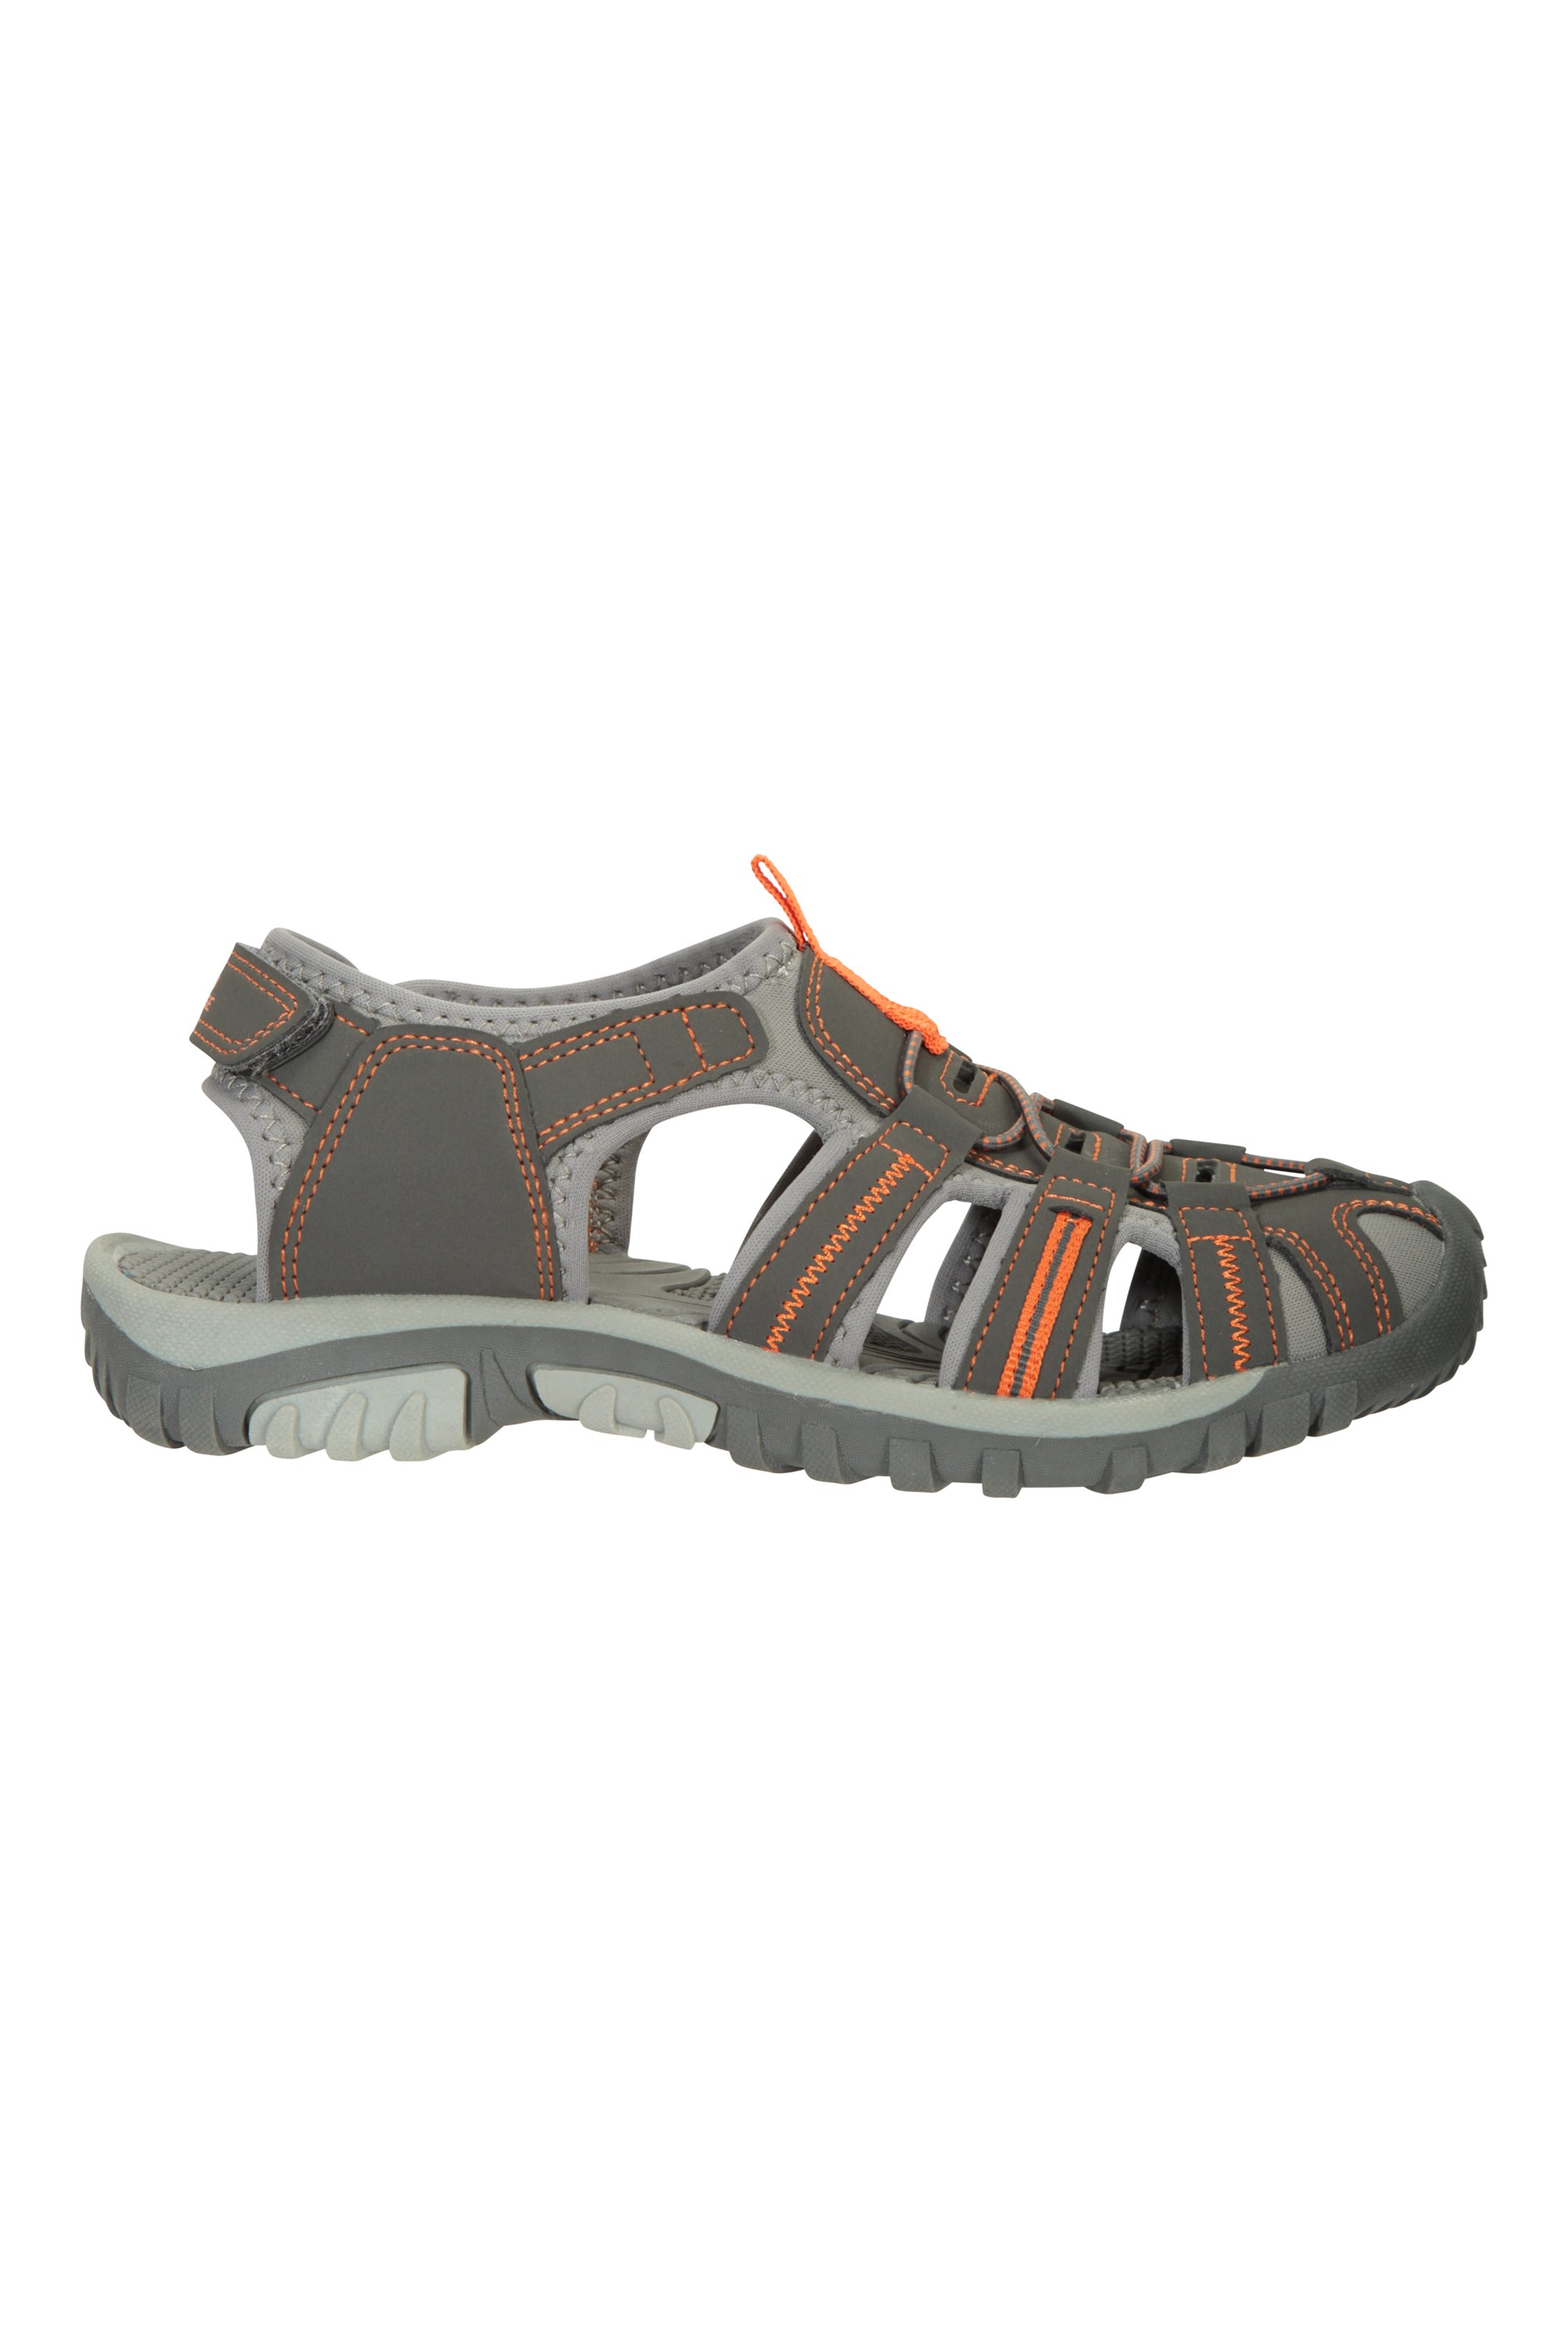 Ideal para Caminar Entresuela Mountain Warehouse Sandalias Bay para niños Viajar Sandalias de Neopreno Zapatos de Verano Ajustables y cómodos para niños 